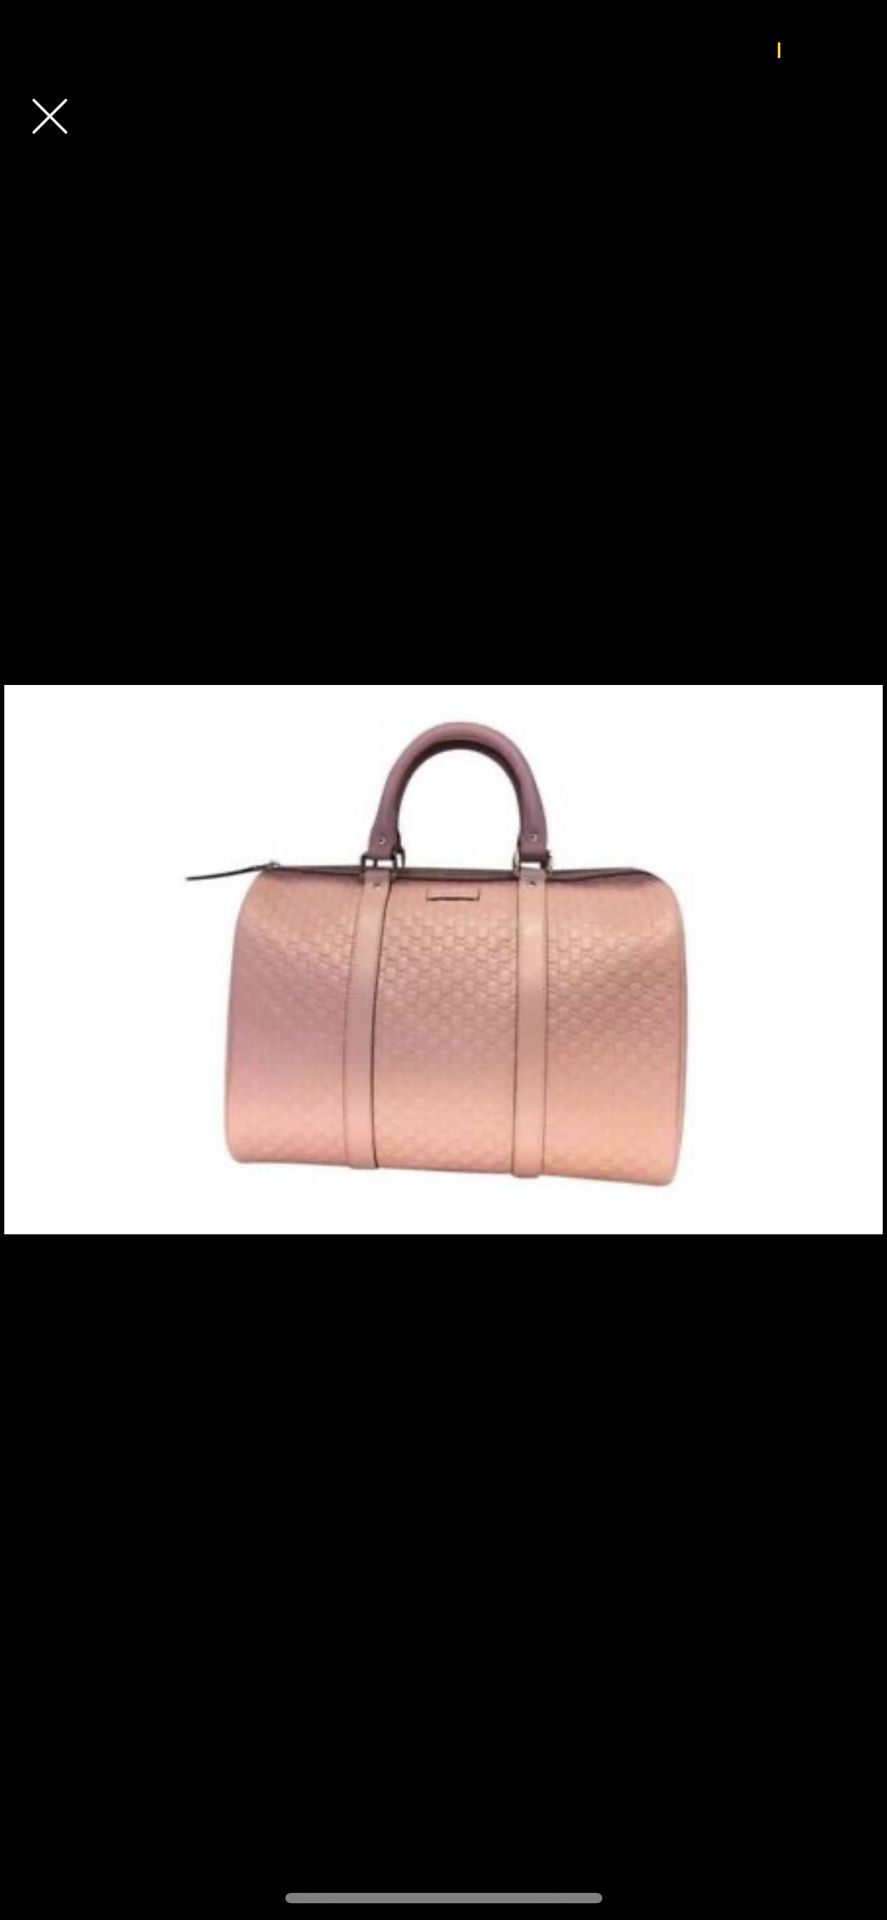 Authentic Gucci bag satchel 